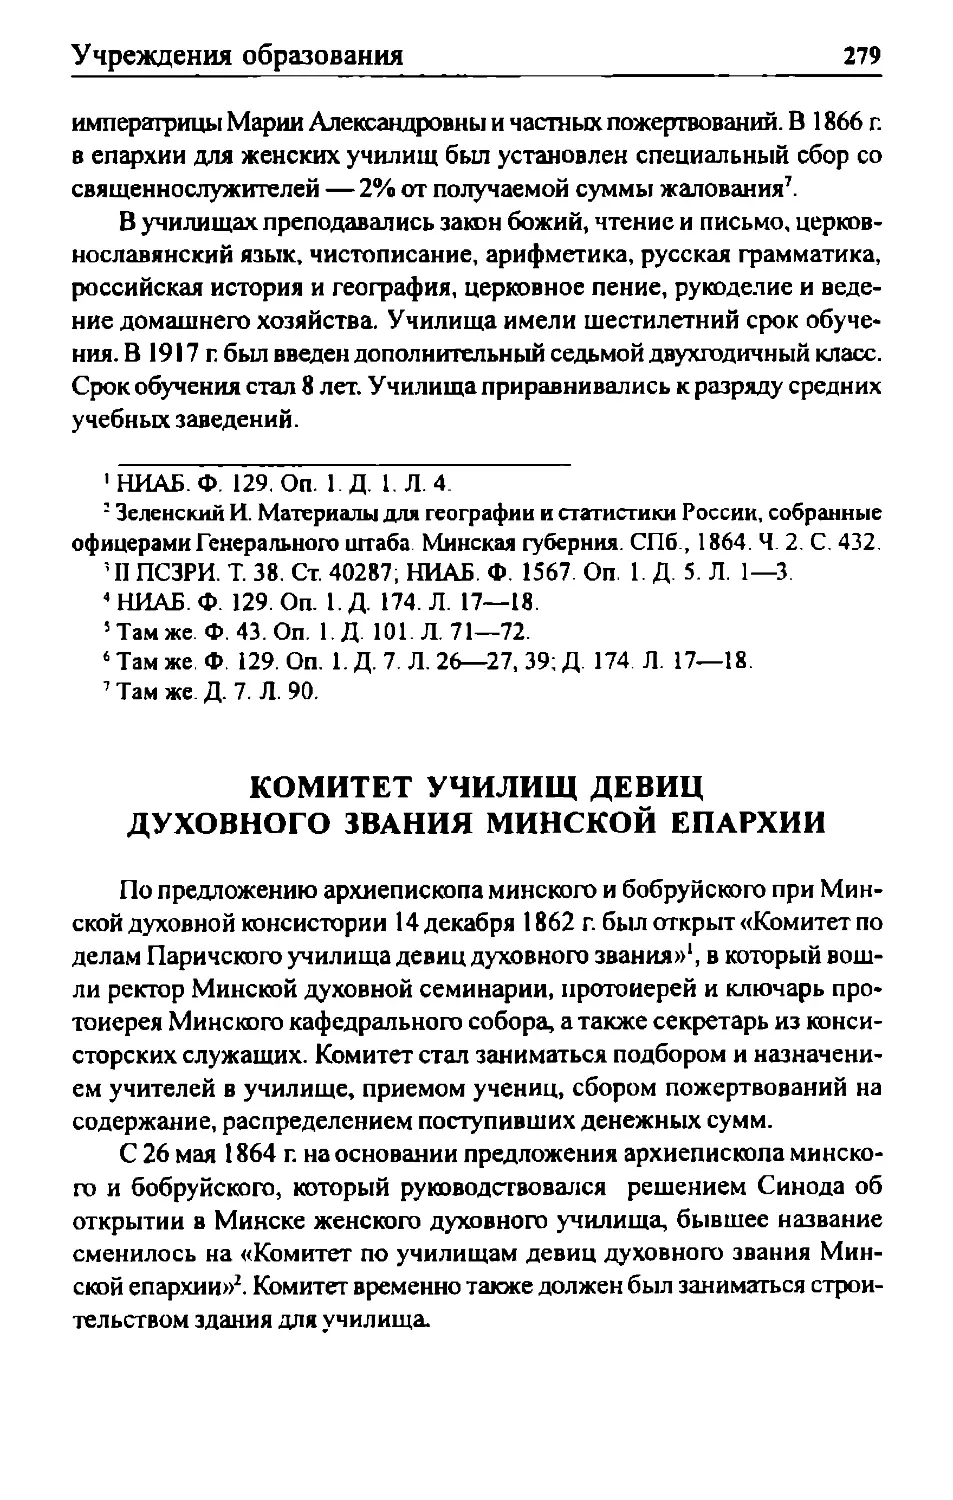 Комитет училищ девиц духовного звания Минской епархии